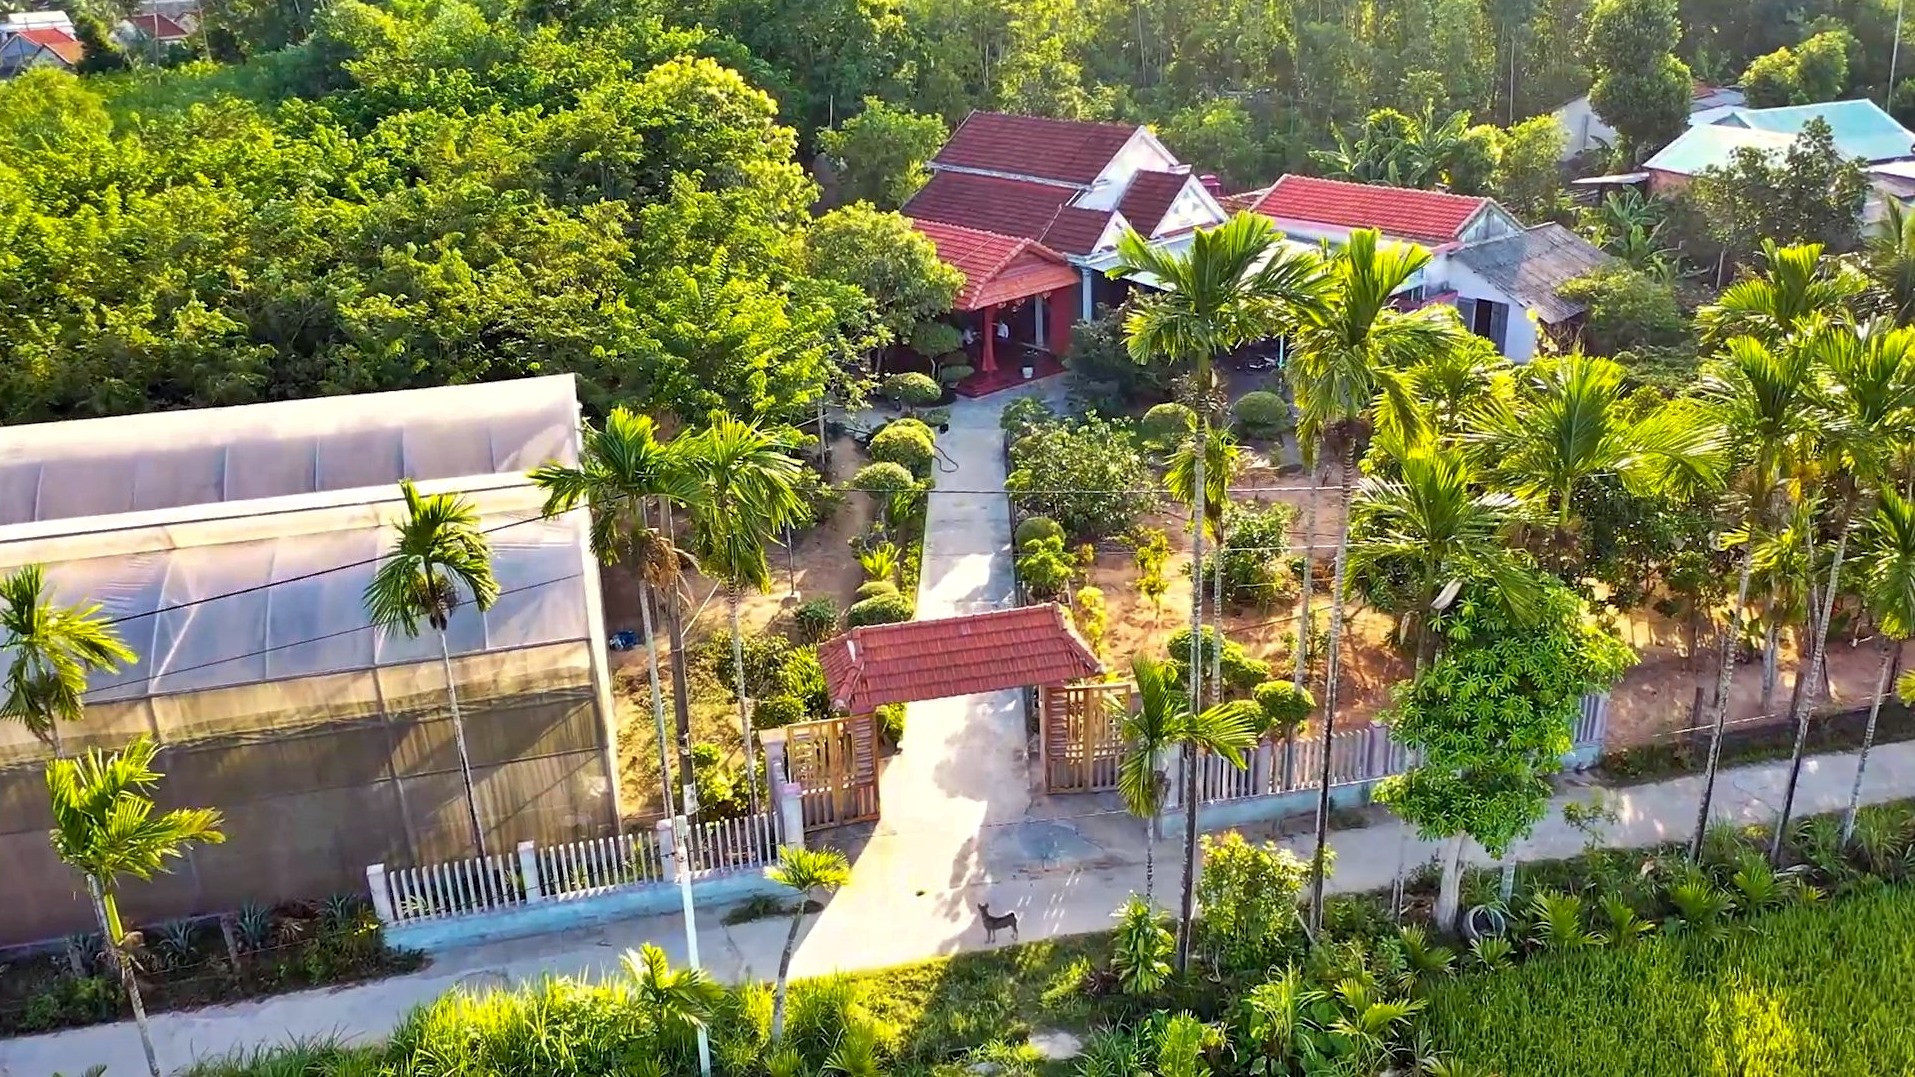 Người dân Phú Ninh đã cải tạo hơn 1.000 khu vườn cho cảnh quan nông thôn đẹp và tăng thu nhập. Ảnh: Đ.C.T